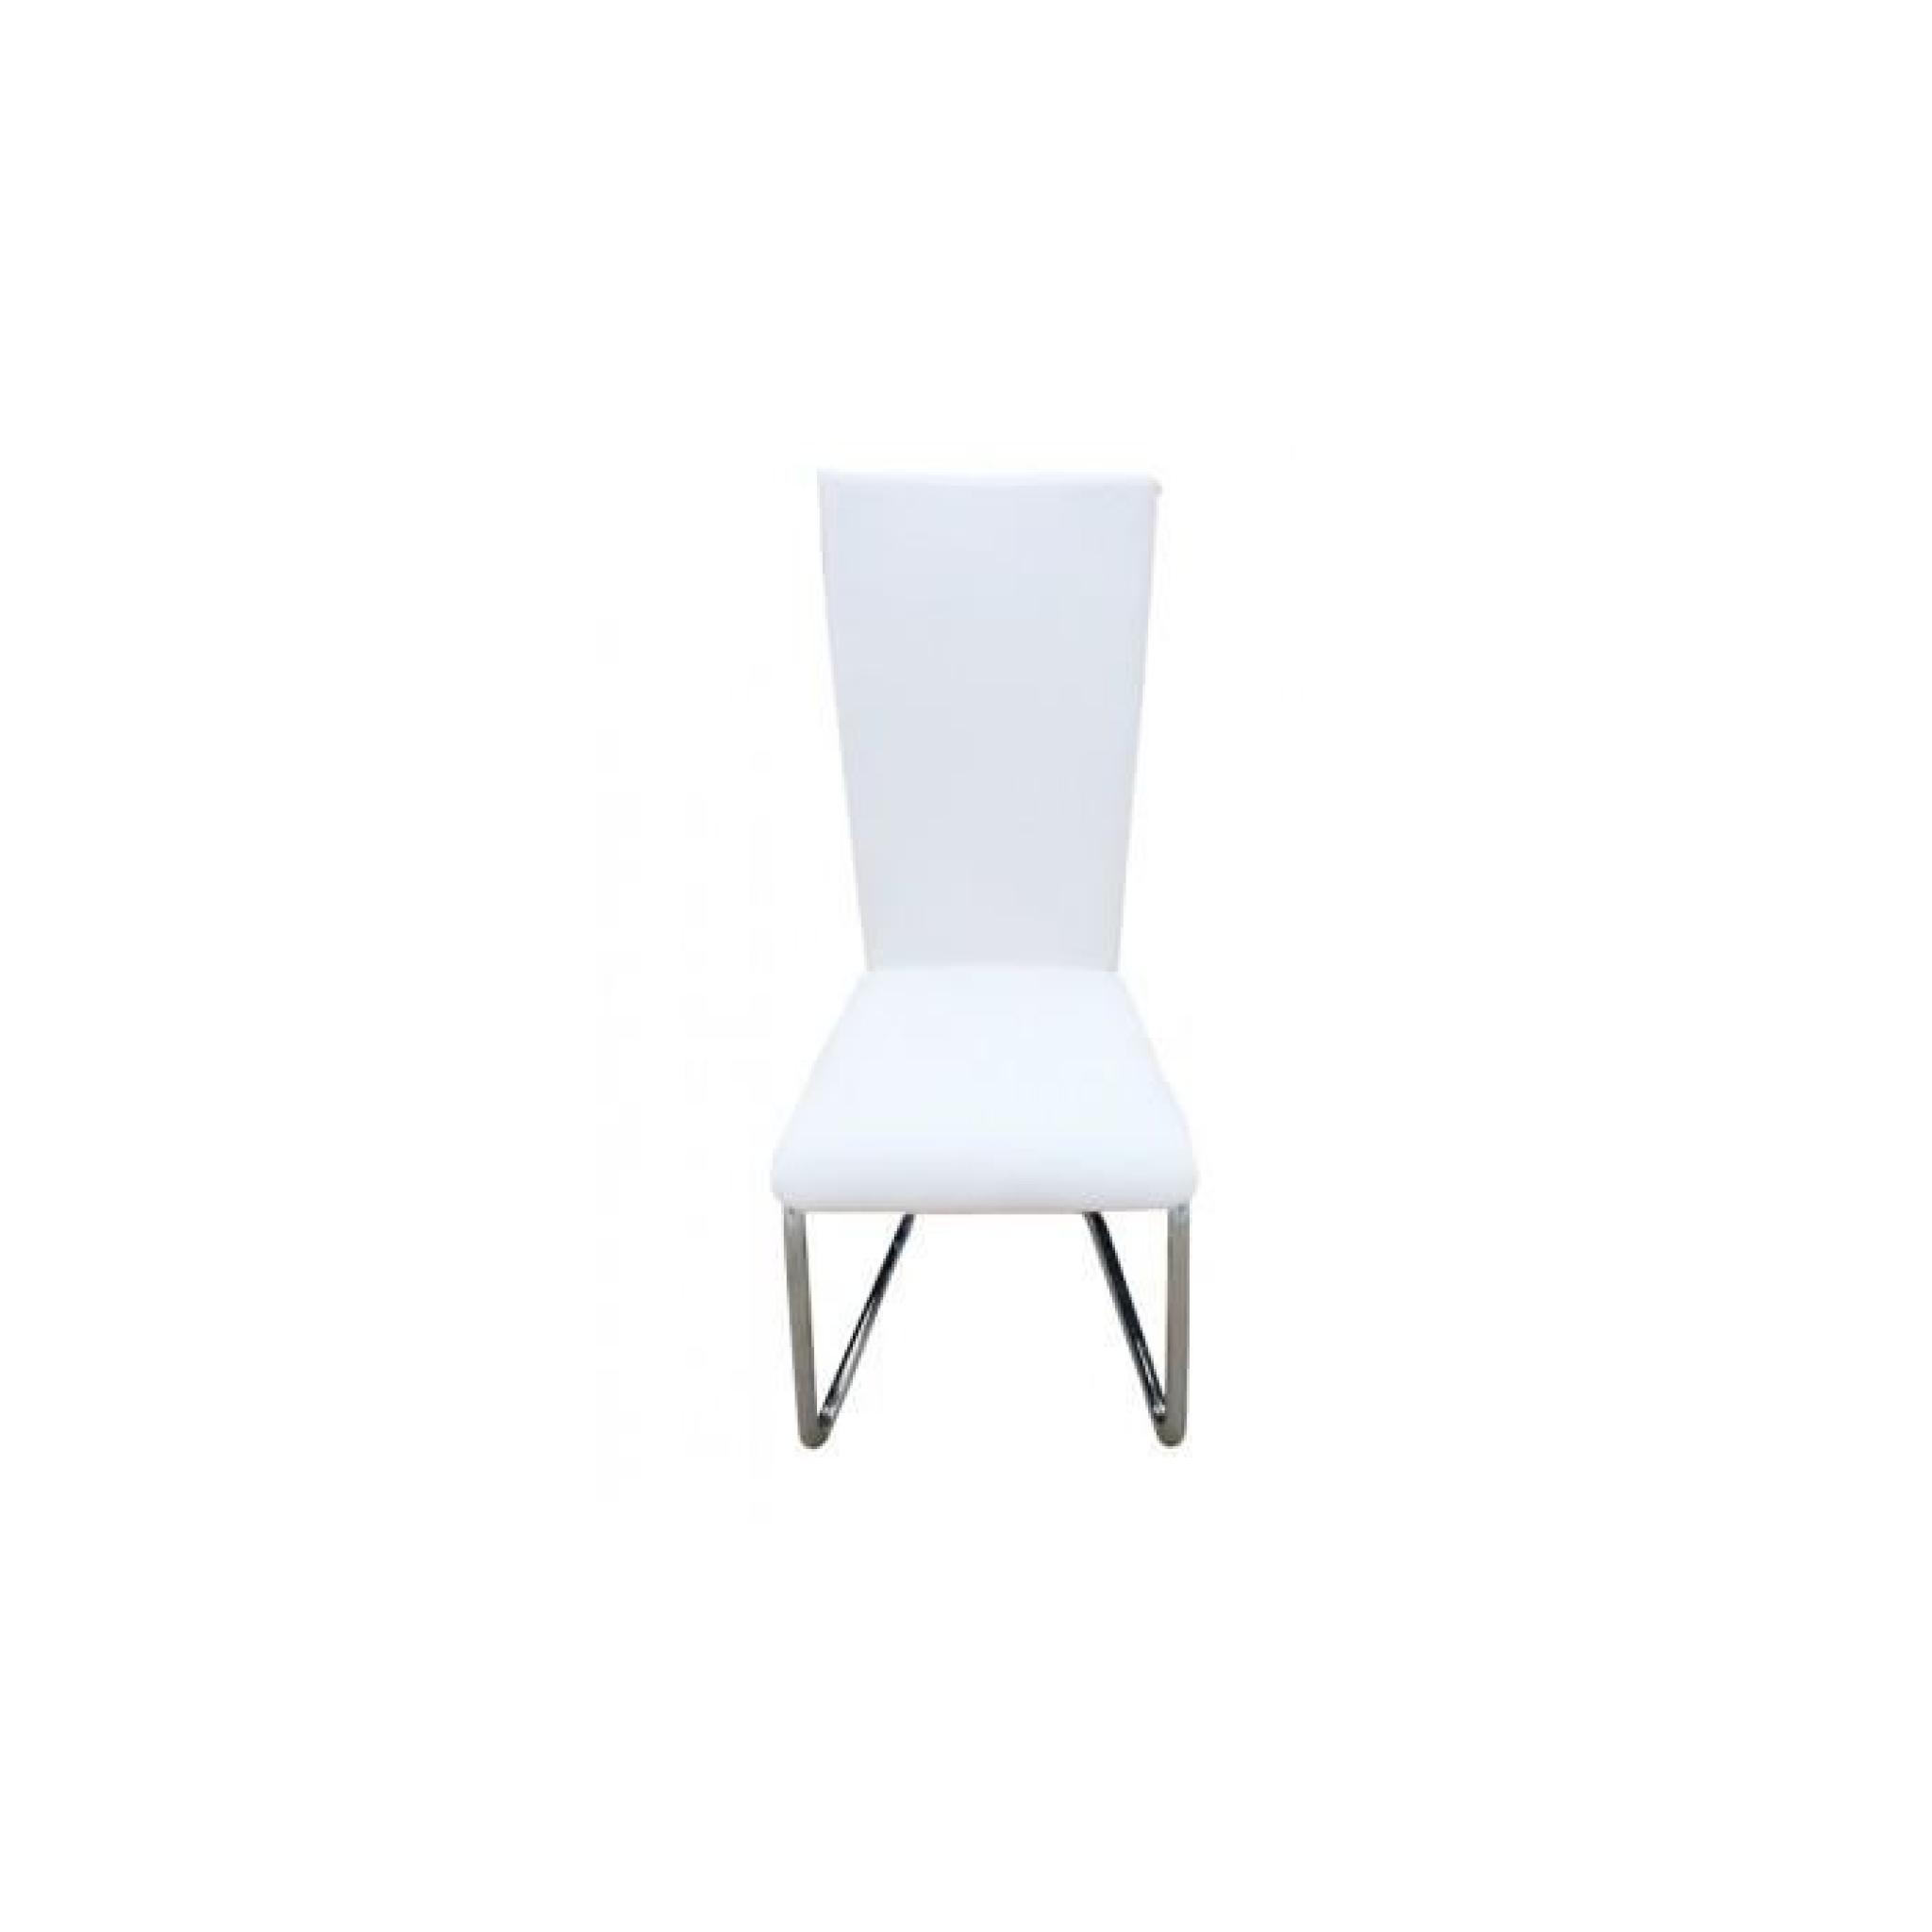 6 Chaise design métal blanche pas cher